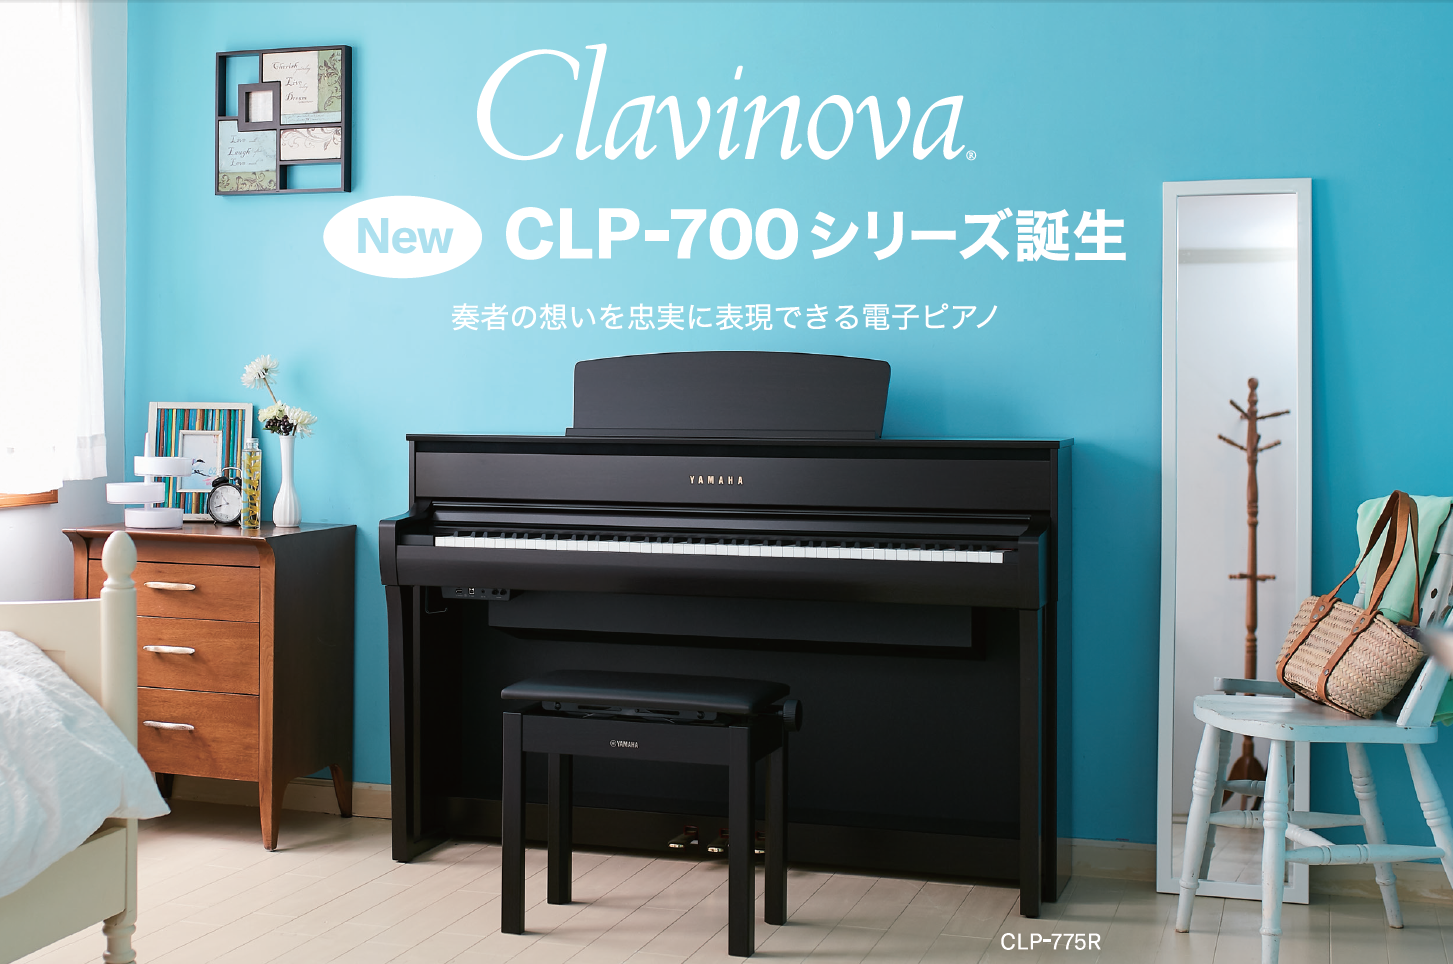 【電子ピアノ】YAMAHA新製品クラビノーバCLP-700シリーズご注文受付中！